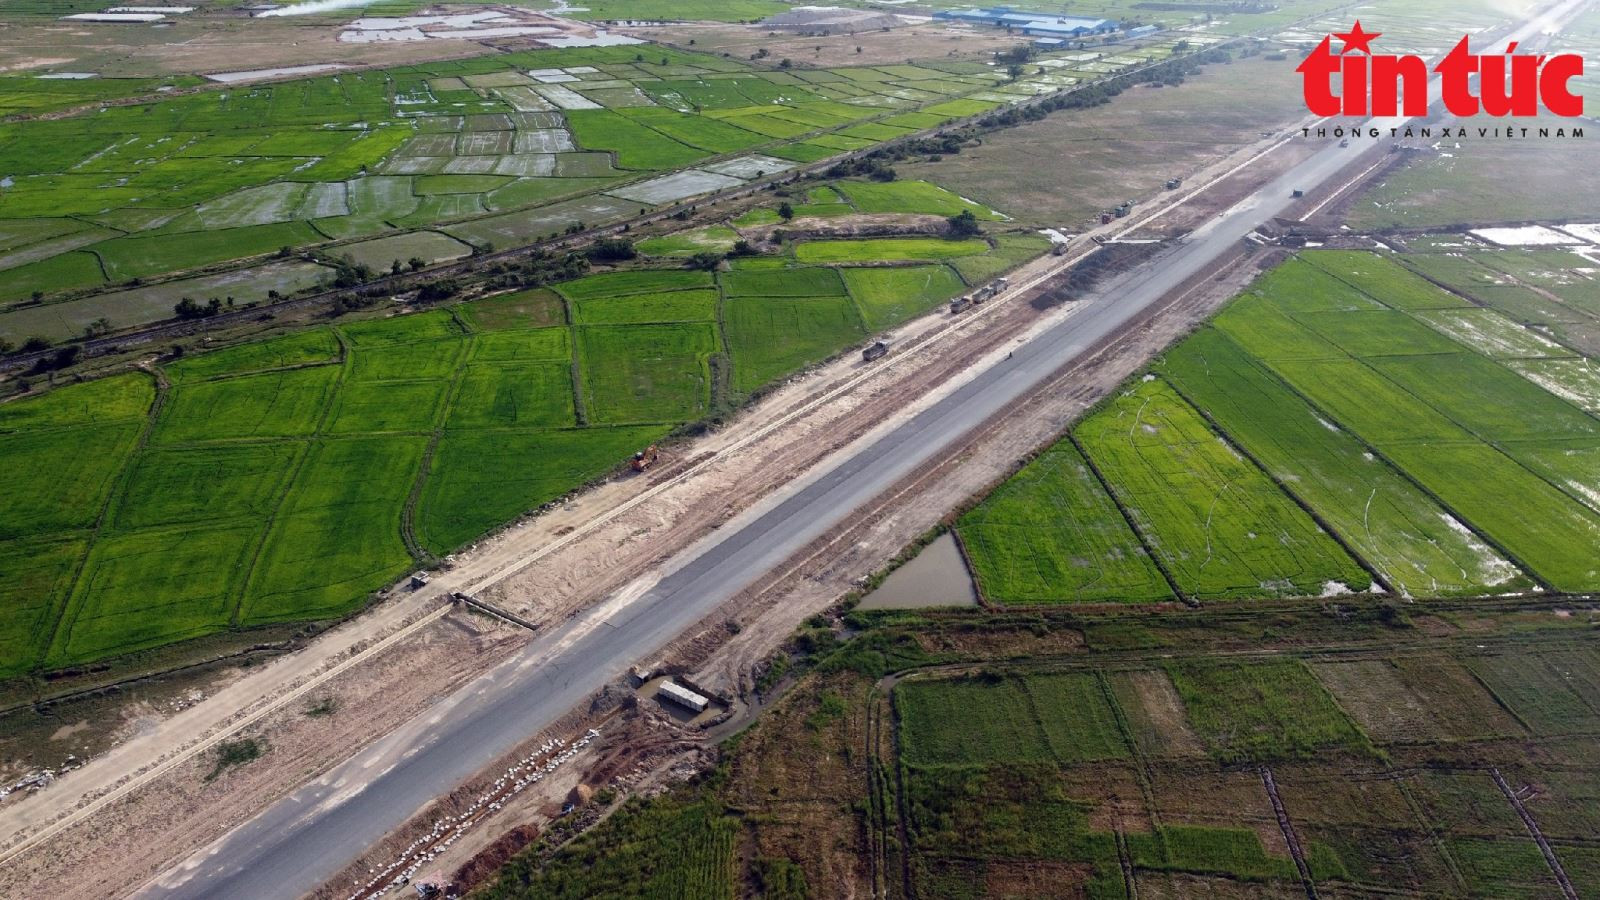 Cao tốc Vĩnh Hảo - Phan Thiết dài 100,8 km nối tiếp với cao tốc Cam Lâm – Vĩnh Hảo, giai đoạn 1 dự án xây dựng 4 làn xe, vận tốc thiết kế 80 km/giờ, giai đoạn hoàn chỉnh sẽ đầu tư 6 làn xe, vận tốc thiết kế 120 km/giờ.